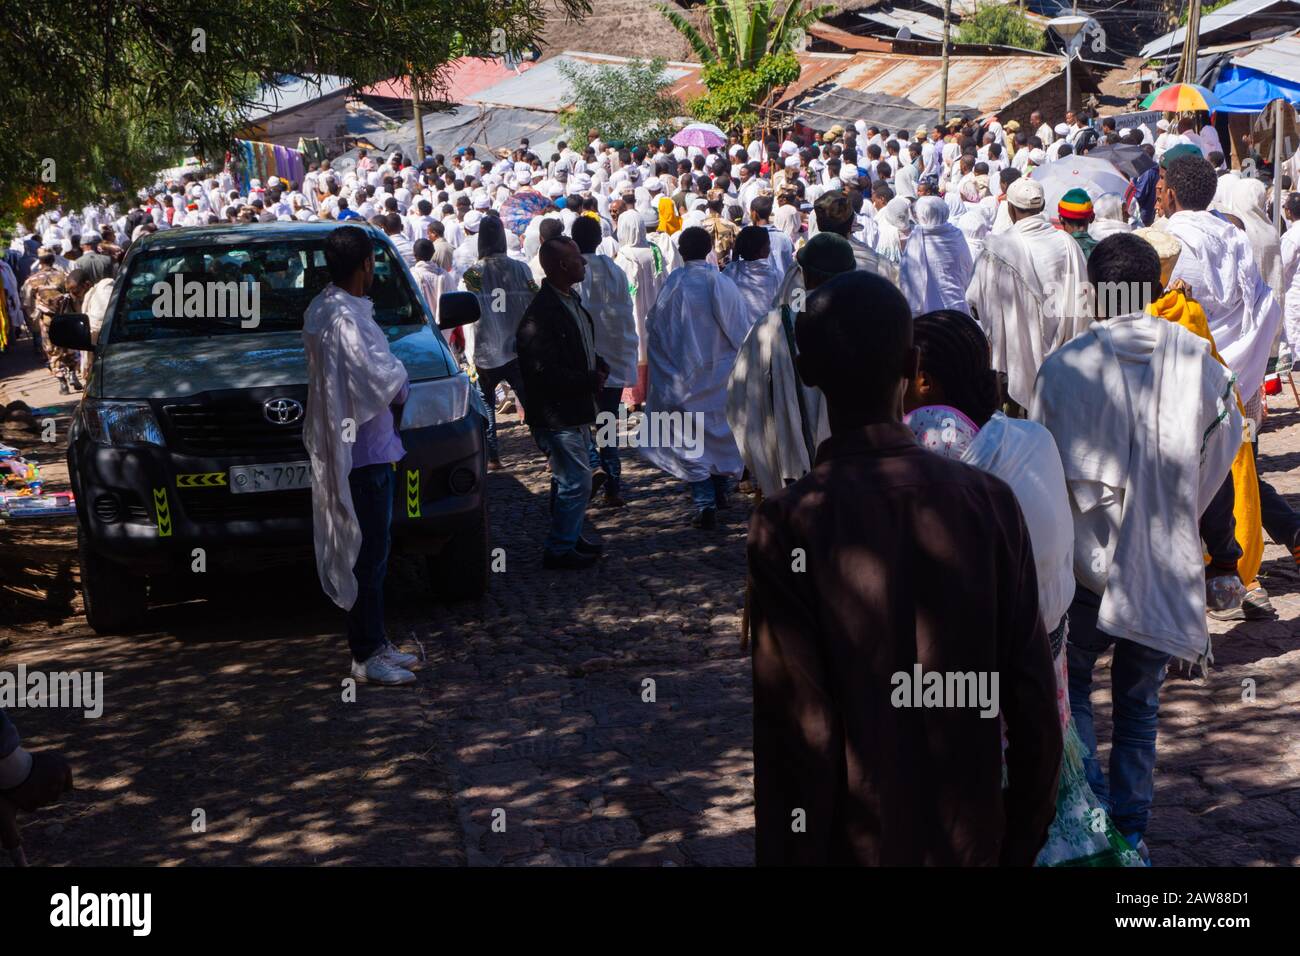 Lalibela, Ethiopie - Nov 2018: Pèlerins vêtus de couleurs blanches éthiopiennes traditionnelles se rassemblant à l'extérieur des églises souterraines de Lalibela. Banque D'Images